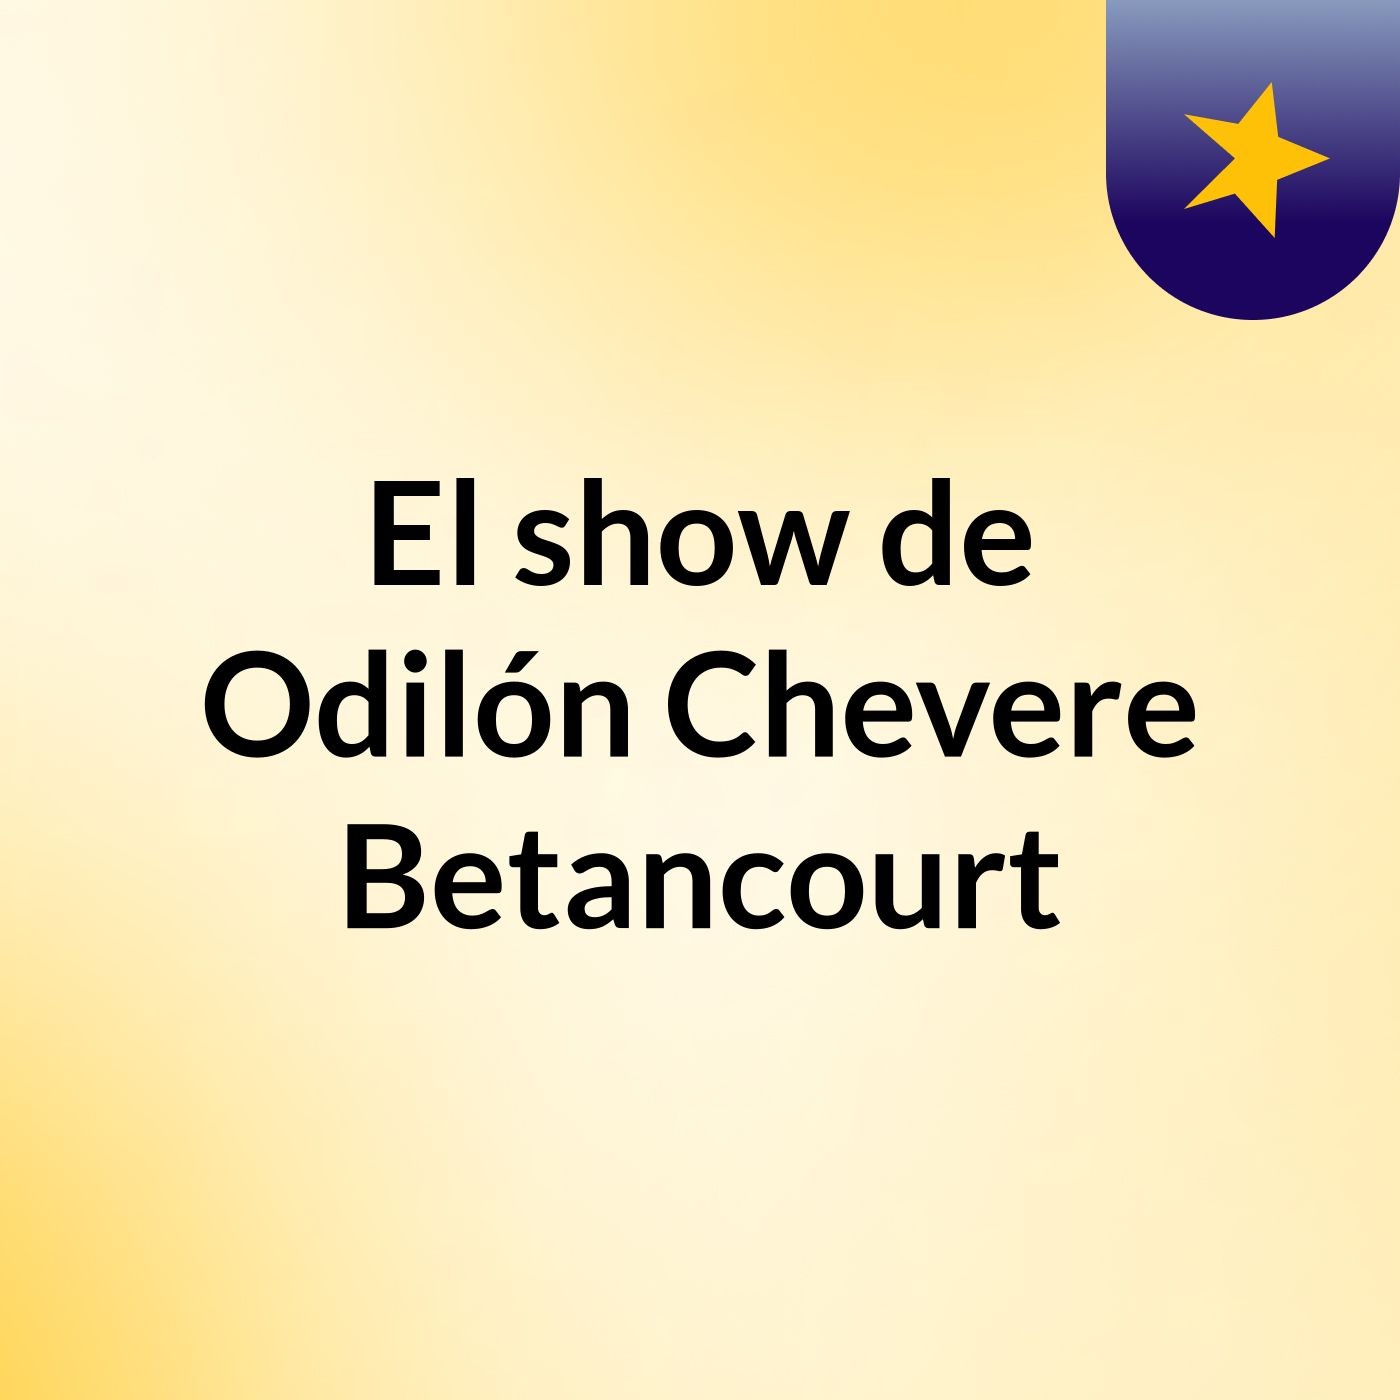 El show de Odilón Chevere Betancourt